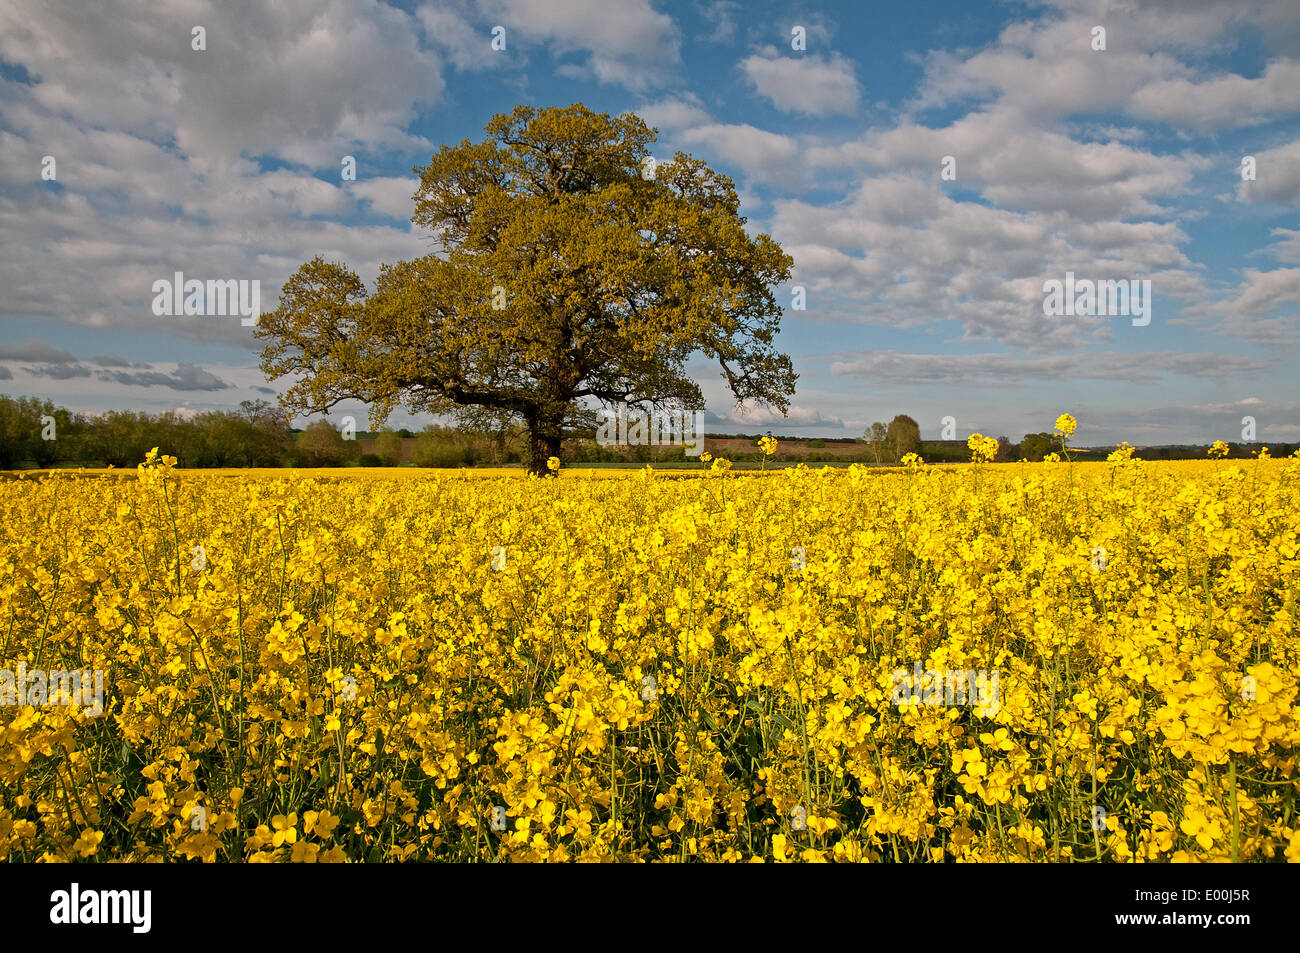 Banbury, Regno Unito. 27 apr 2014. Un bel vecchio albero, giallo di colza e sole rendono un paesaggio glorius in Cotswolds visto dalla A4260 a sud di Banbury Oxfordshire Inghilterra domenica 27 aprile 2014 Credit: David Keith Jones/Alamy Live News Foto Stock